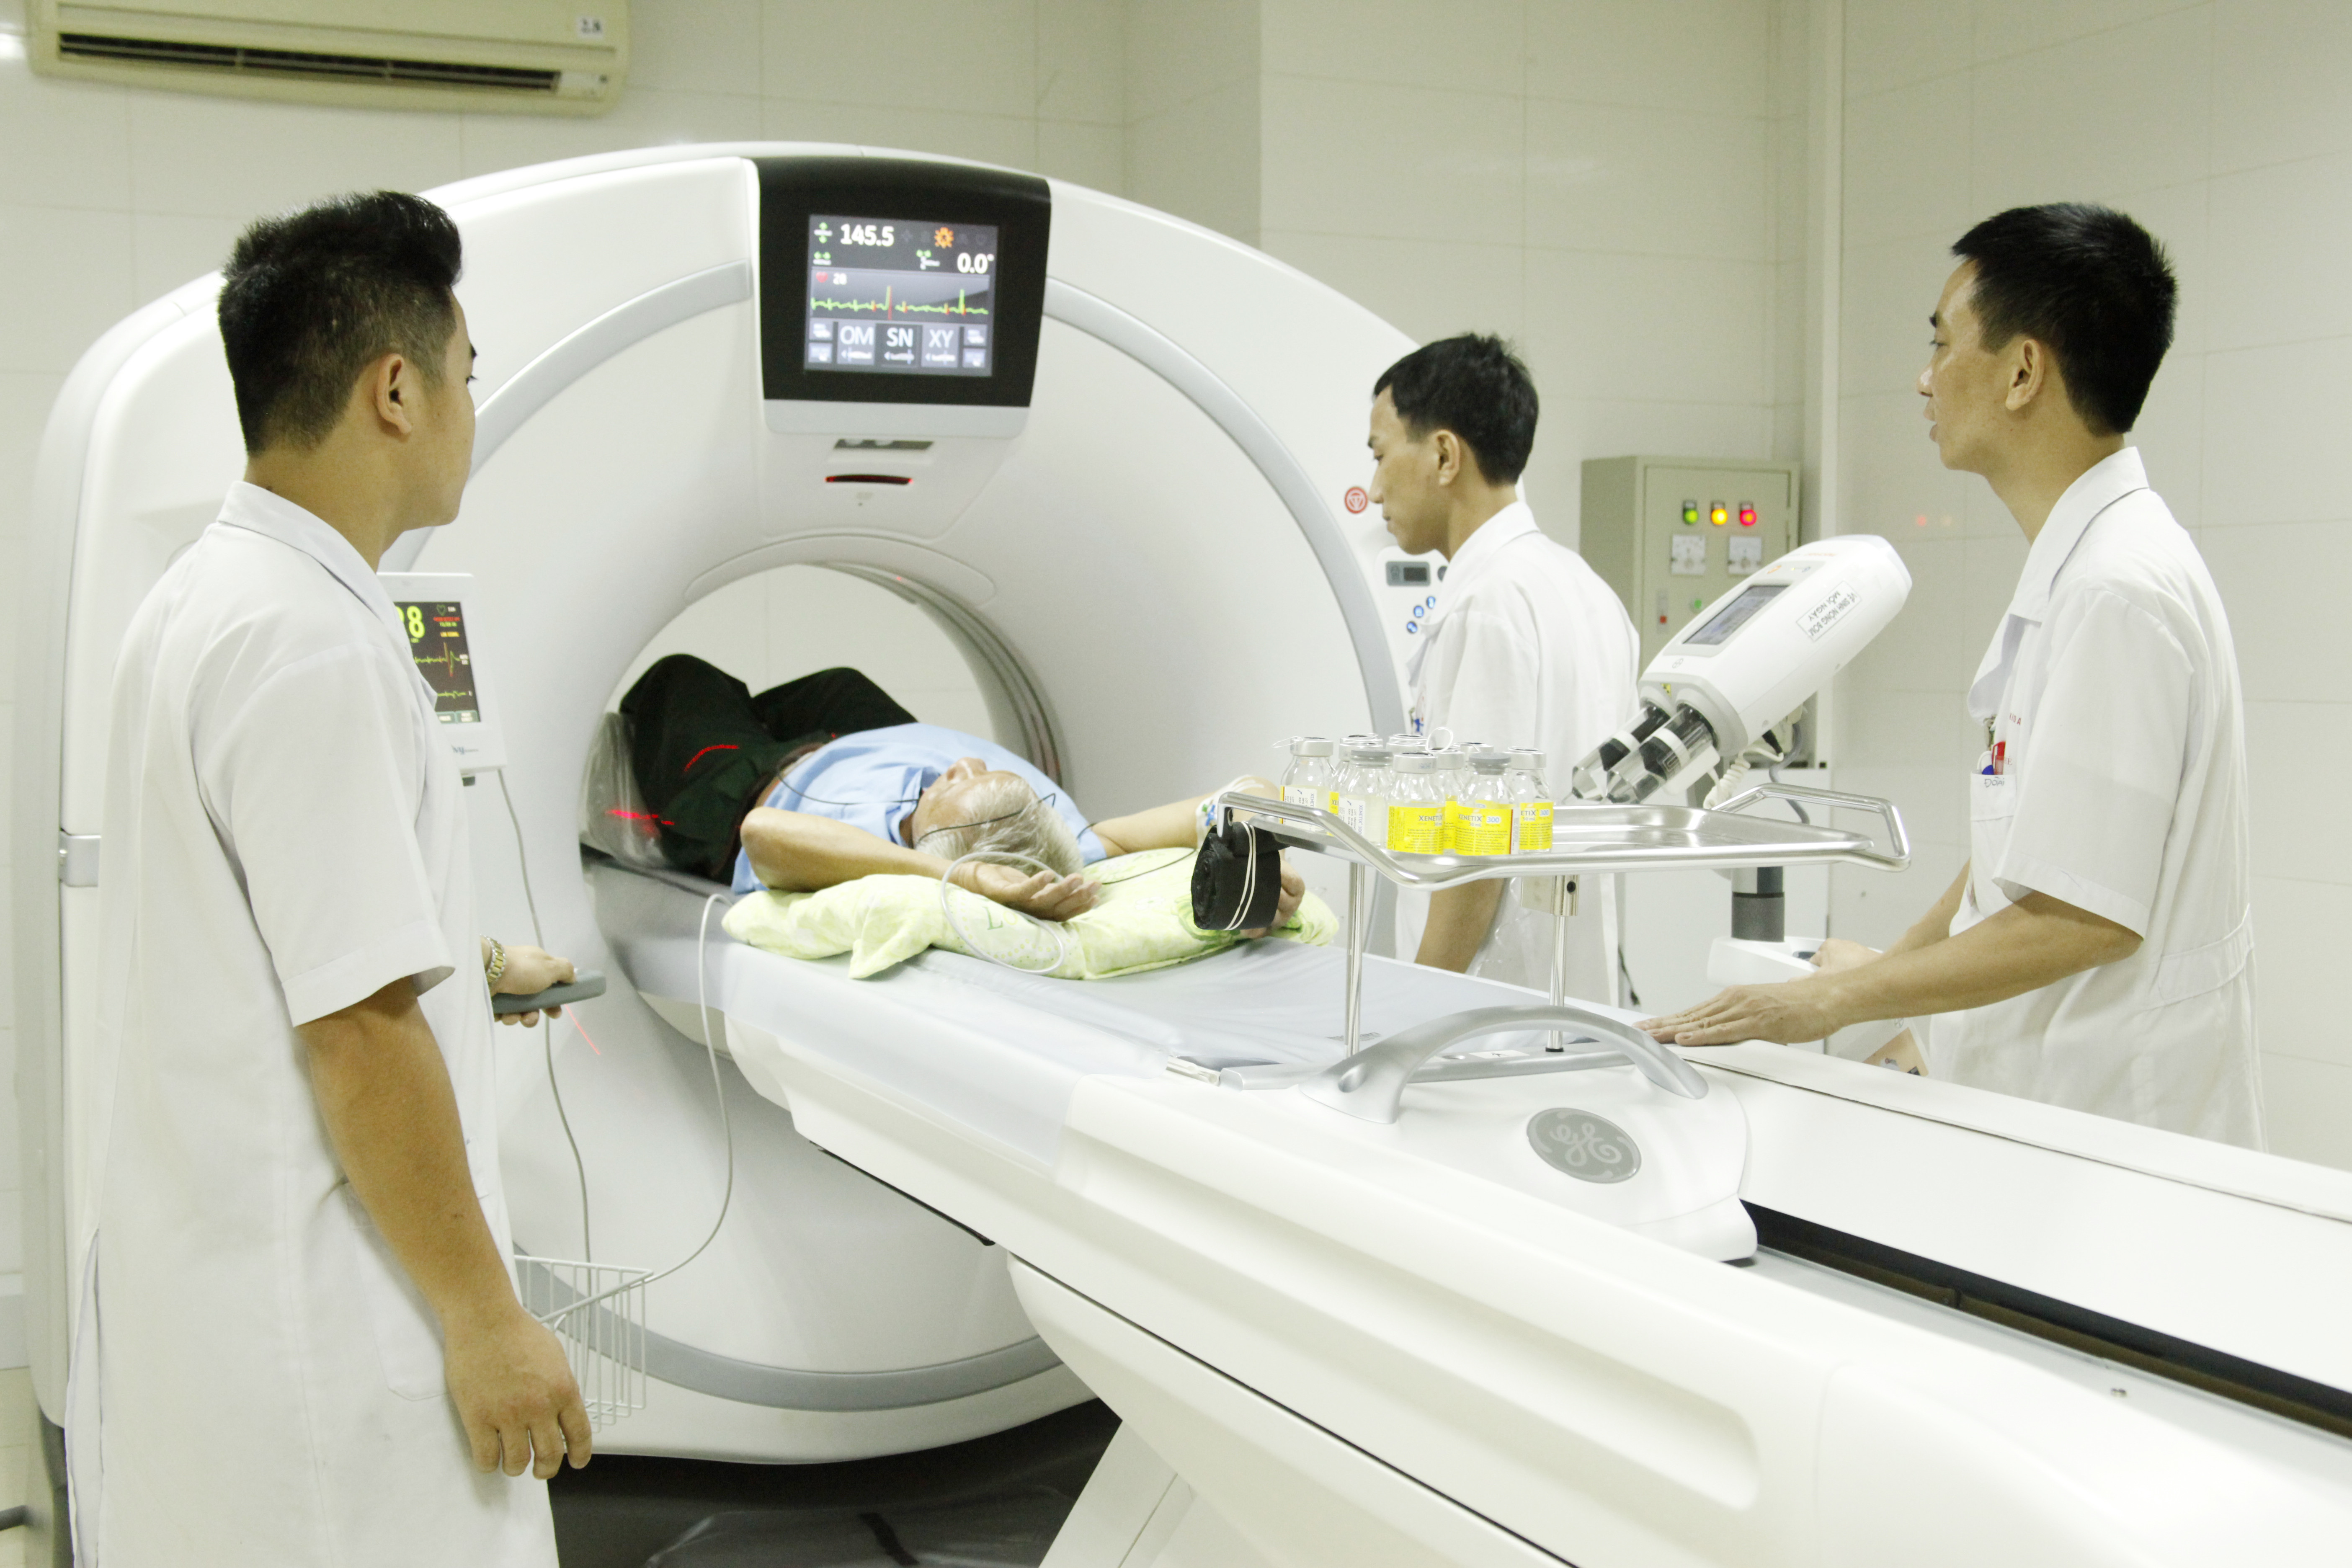 Bệnh viện đầu tư trang thiết bị hiện đại (như Máy chụp CT 128 lát) nhằm nâng cao hiệu quả điều trị. Ảnh: P.V